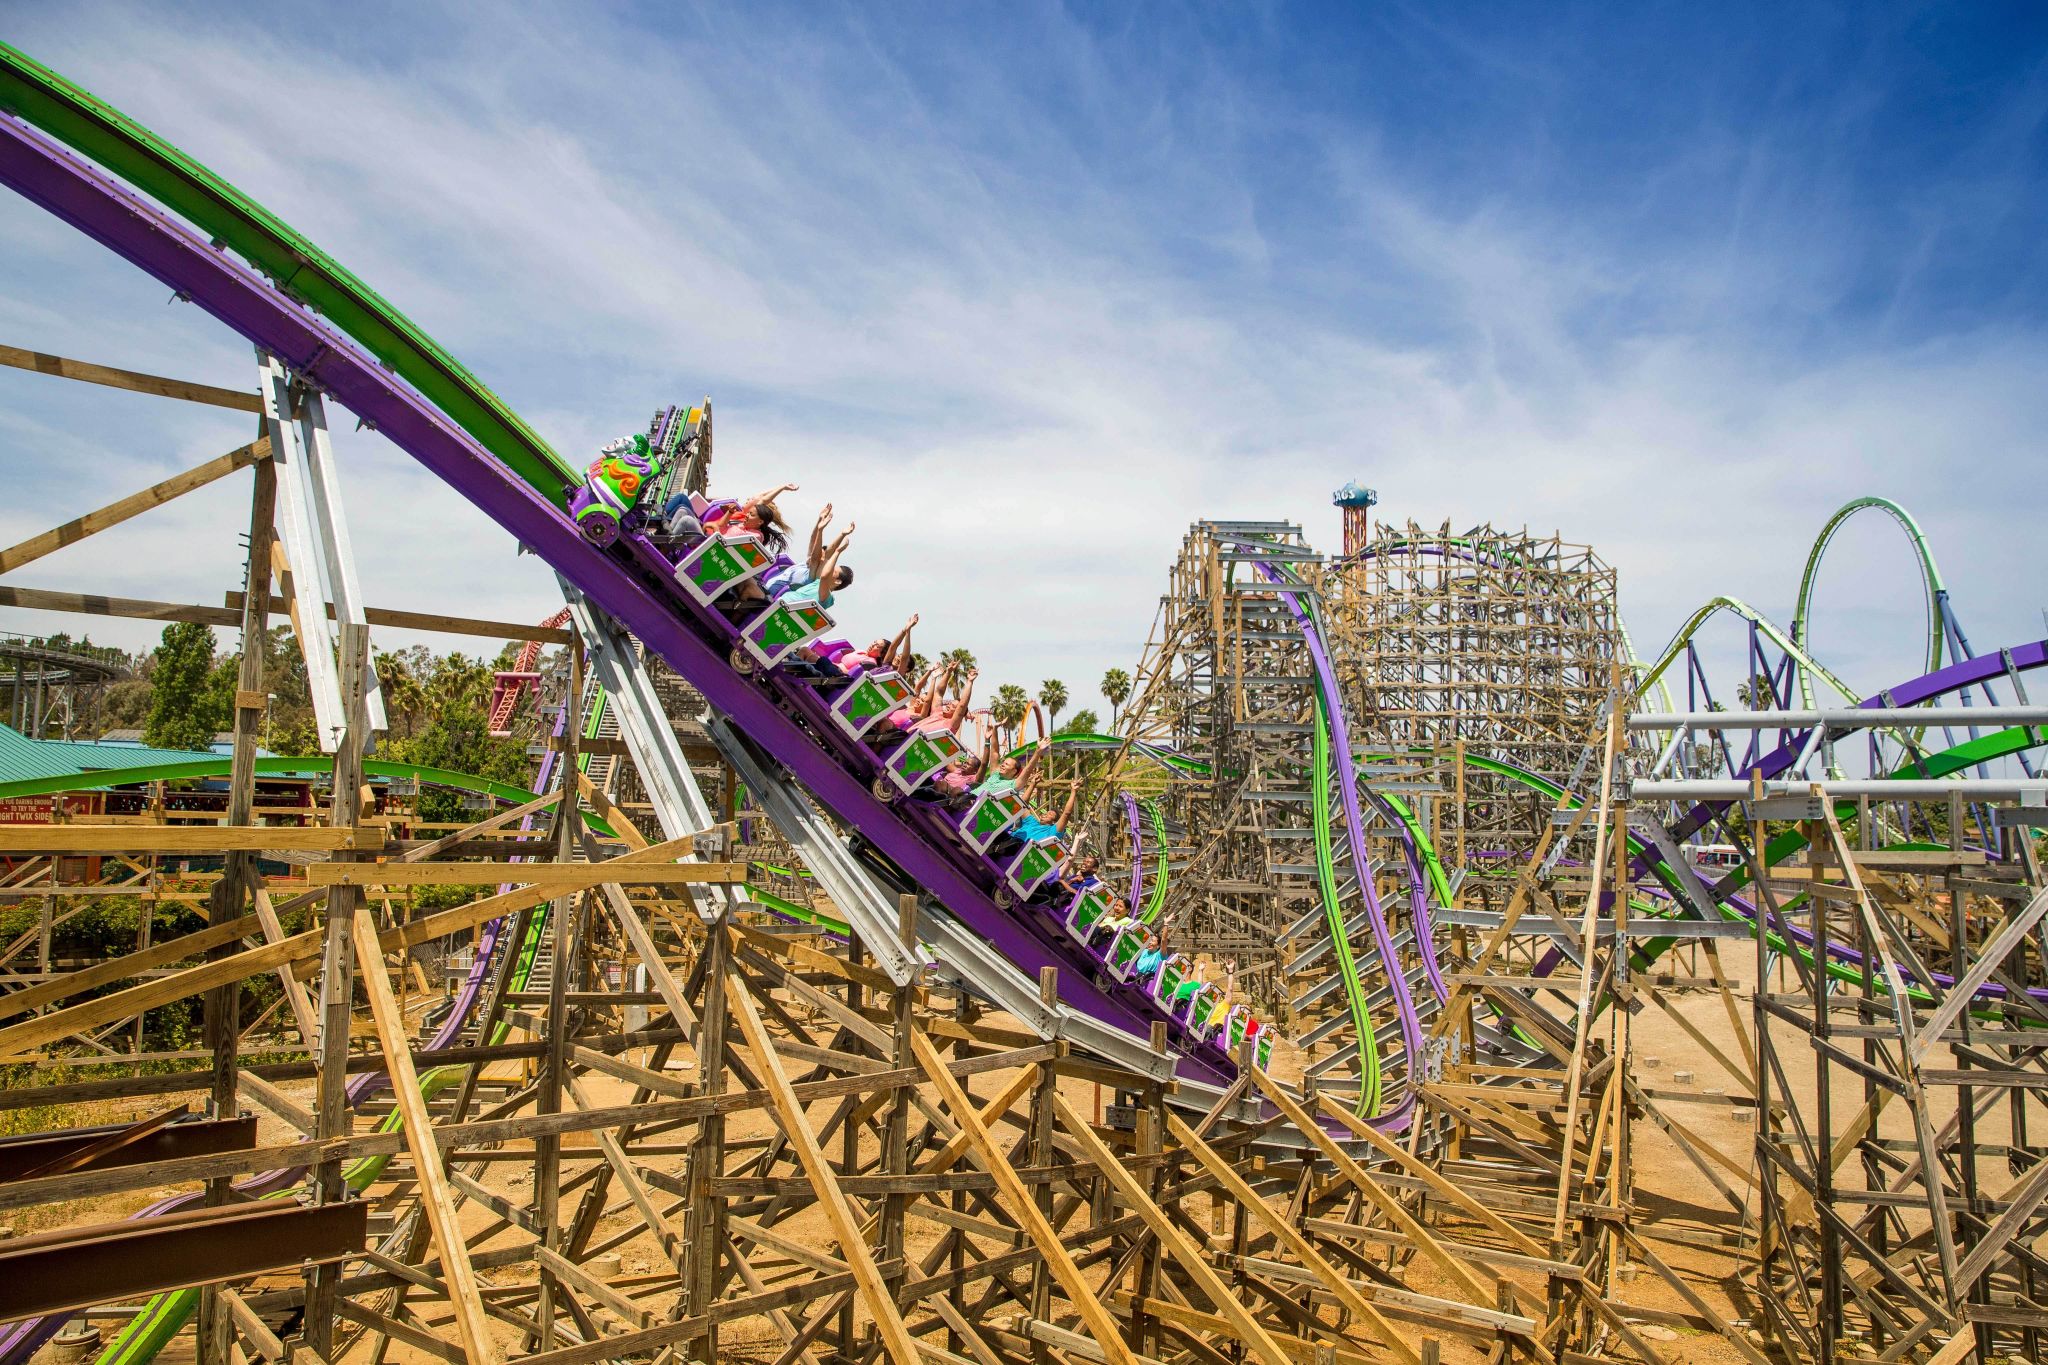 Six Flags' new Joker roller coaster shut down after unveiling